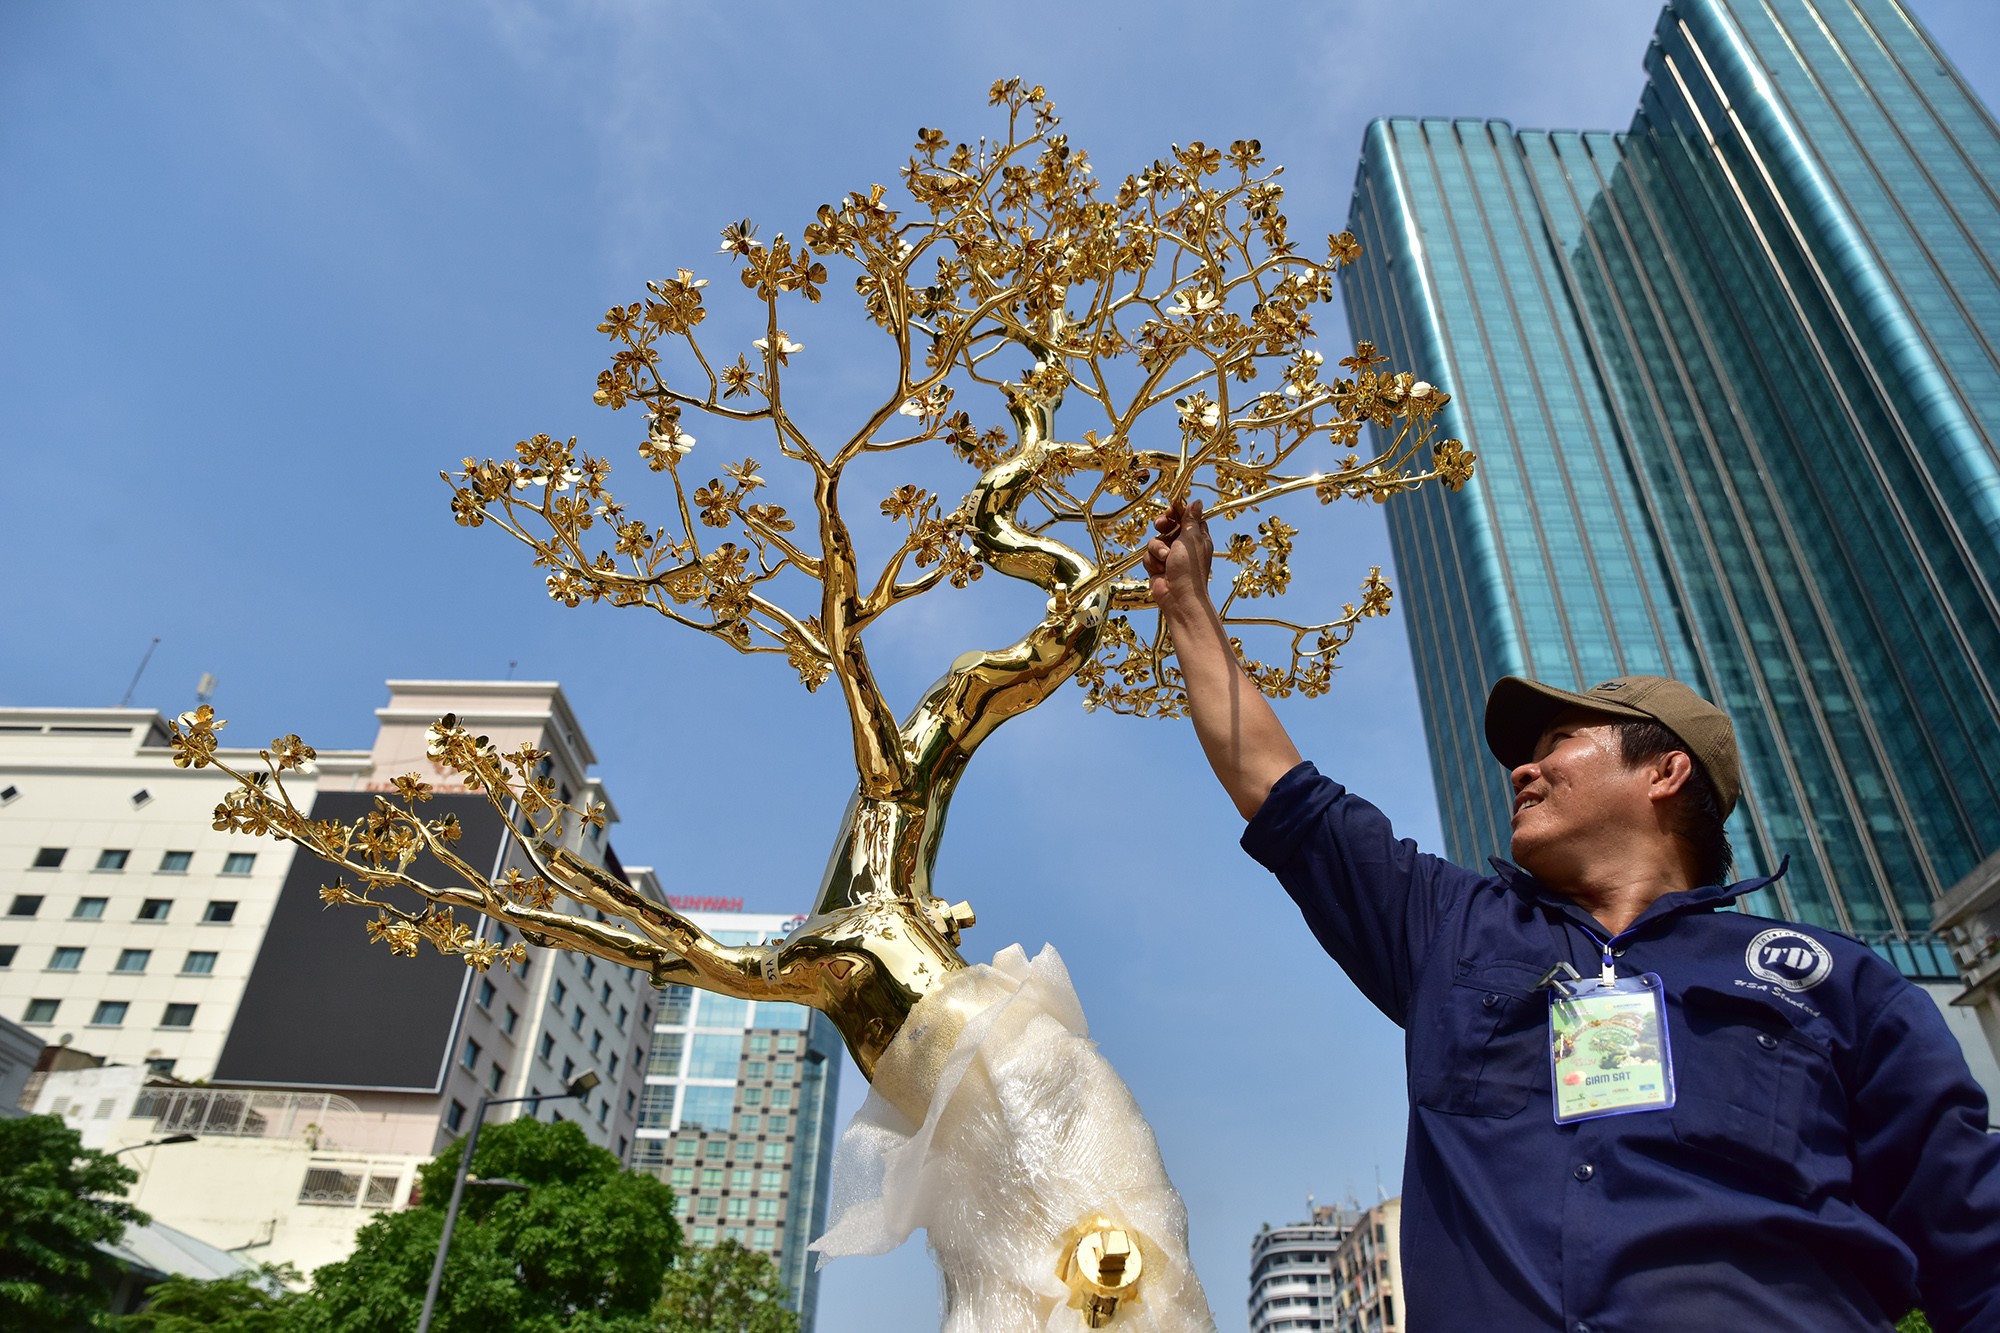 3 cây mai cùng cây bồ đề được dát vàng đang được đơn vị sỡ hữu lắp đặt để phục vụ người dân và du khách chiêm ngưỡng dịp Tết năm nay.